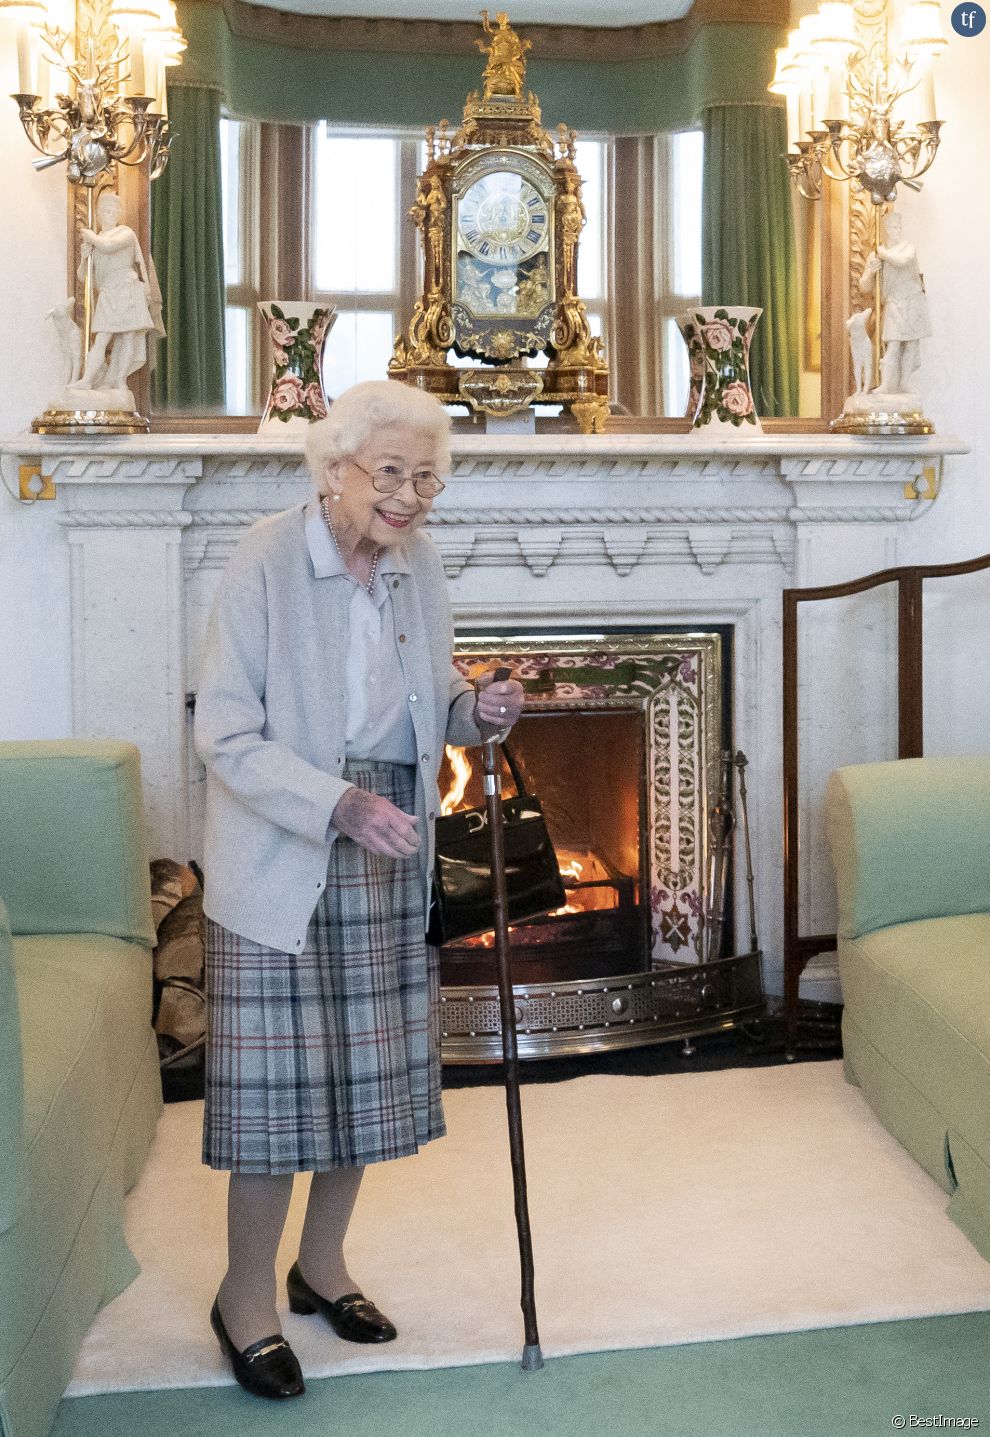  La reine Elisabeth II d&#039;Angleterre reçoit Liz Truss, nouvelle Première ministre britannique, à Balmoral pour lui demander de former un nouveau gouvernement, 6 septembre 2022 